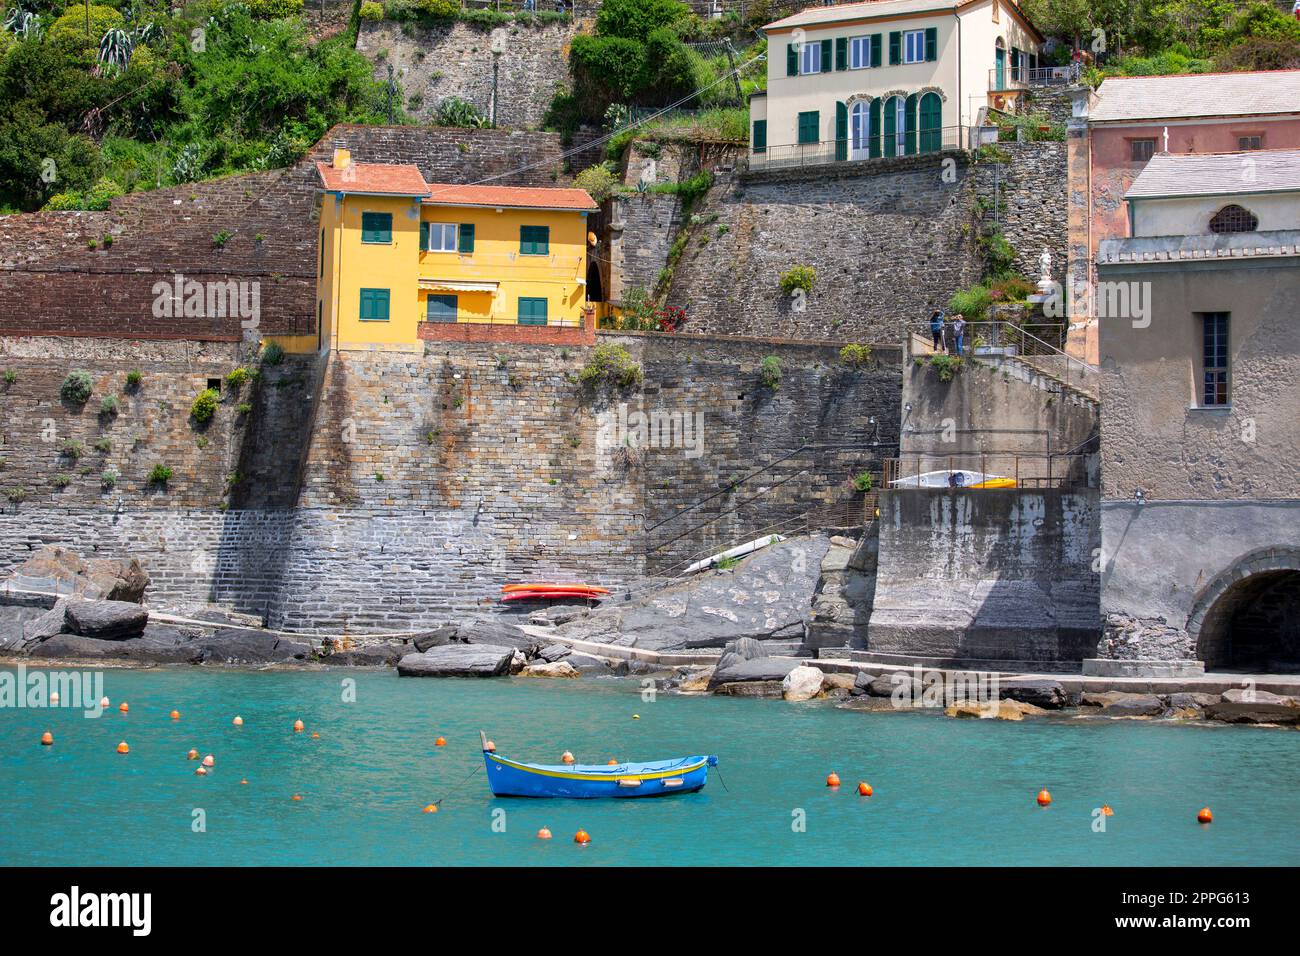 Blick auf die Bucht von Wasser mit verankerten Booten und typischen bunten Häusern in einem kleinen Dorf, Riviera di Levante, Vernazza, Cinque Terre, Italien Stockfoto